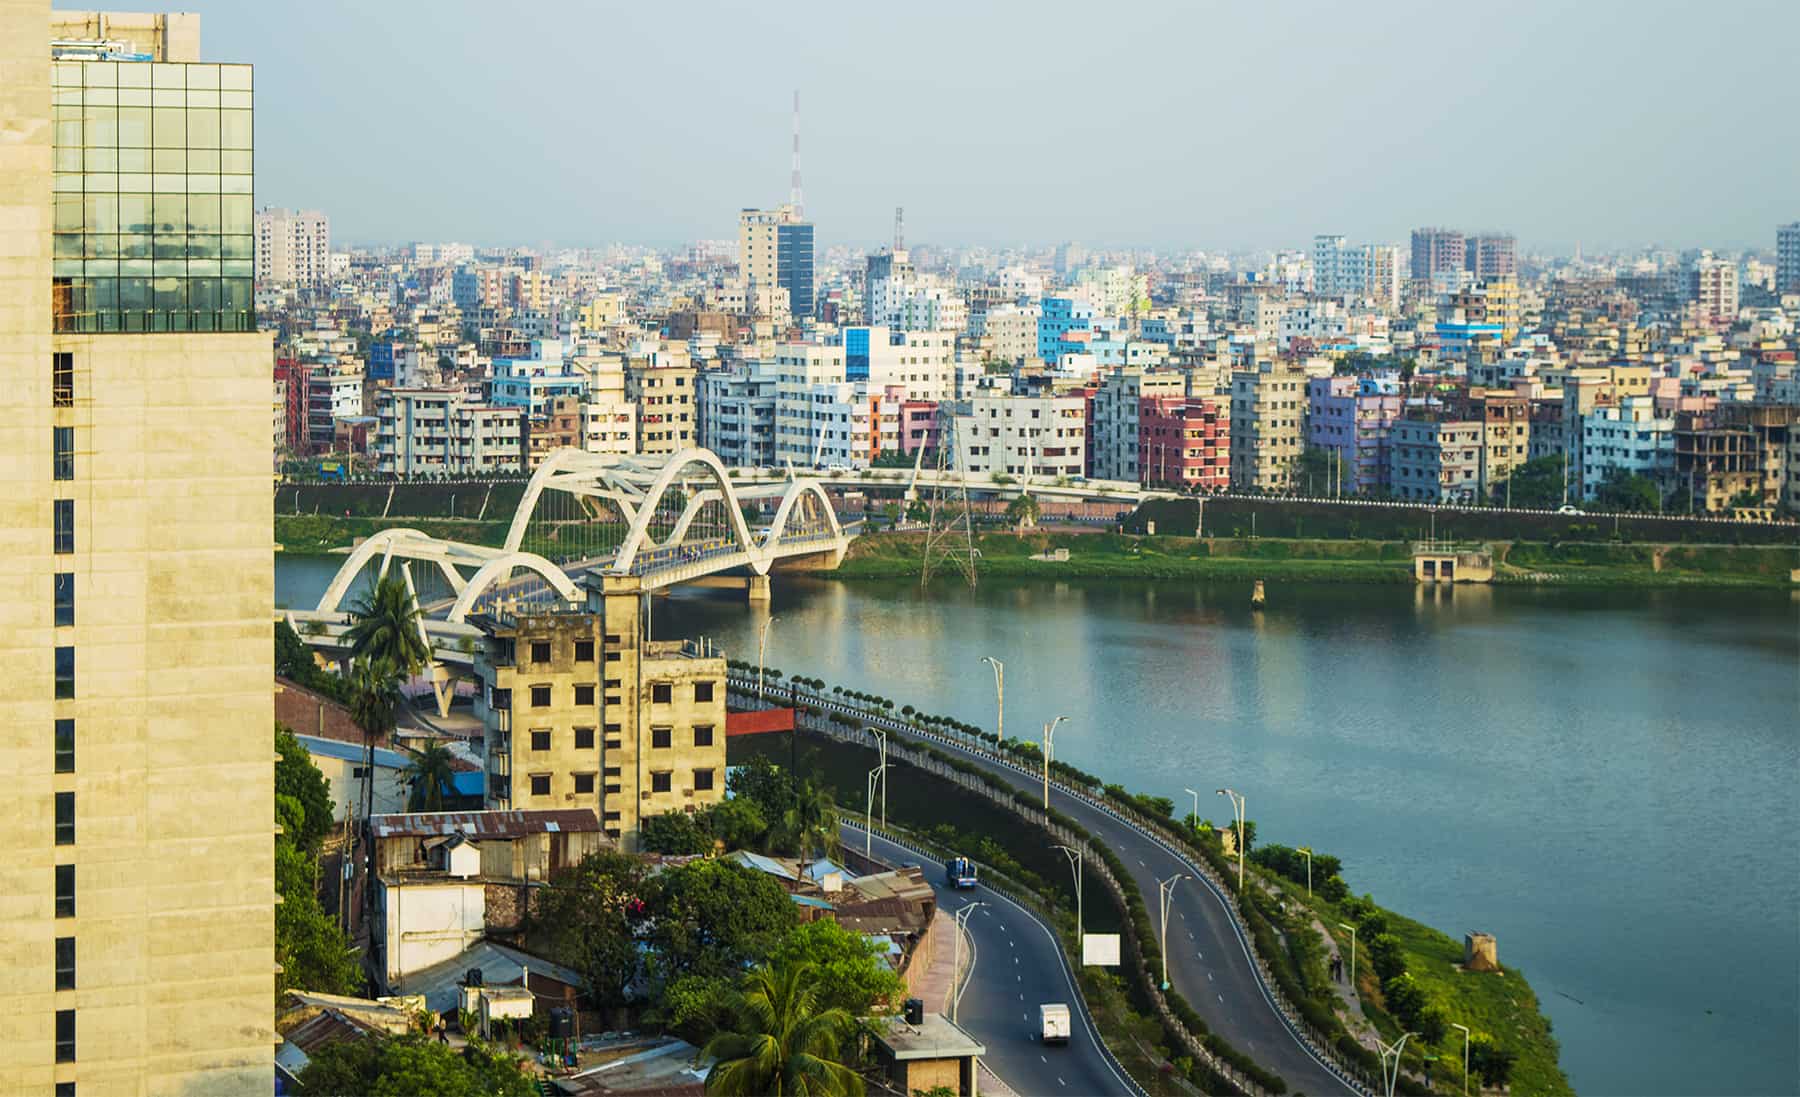 Dhaka: Capital city of Bangladesh